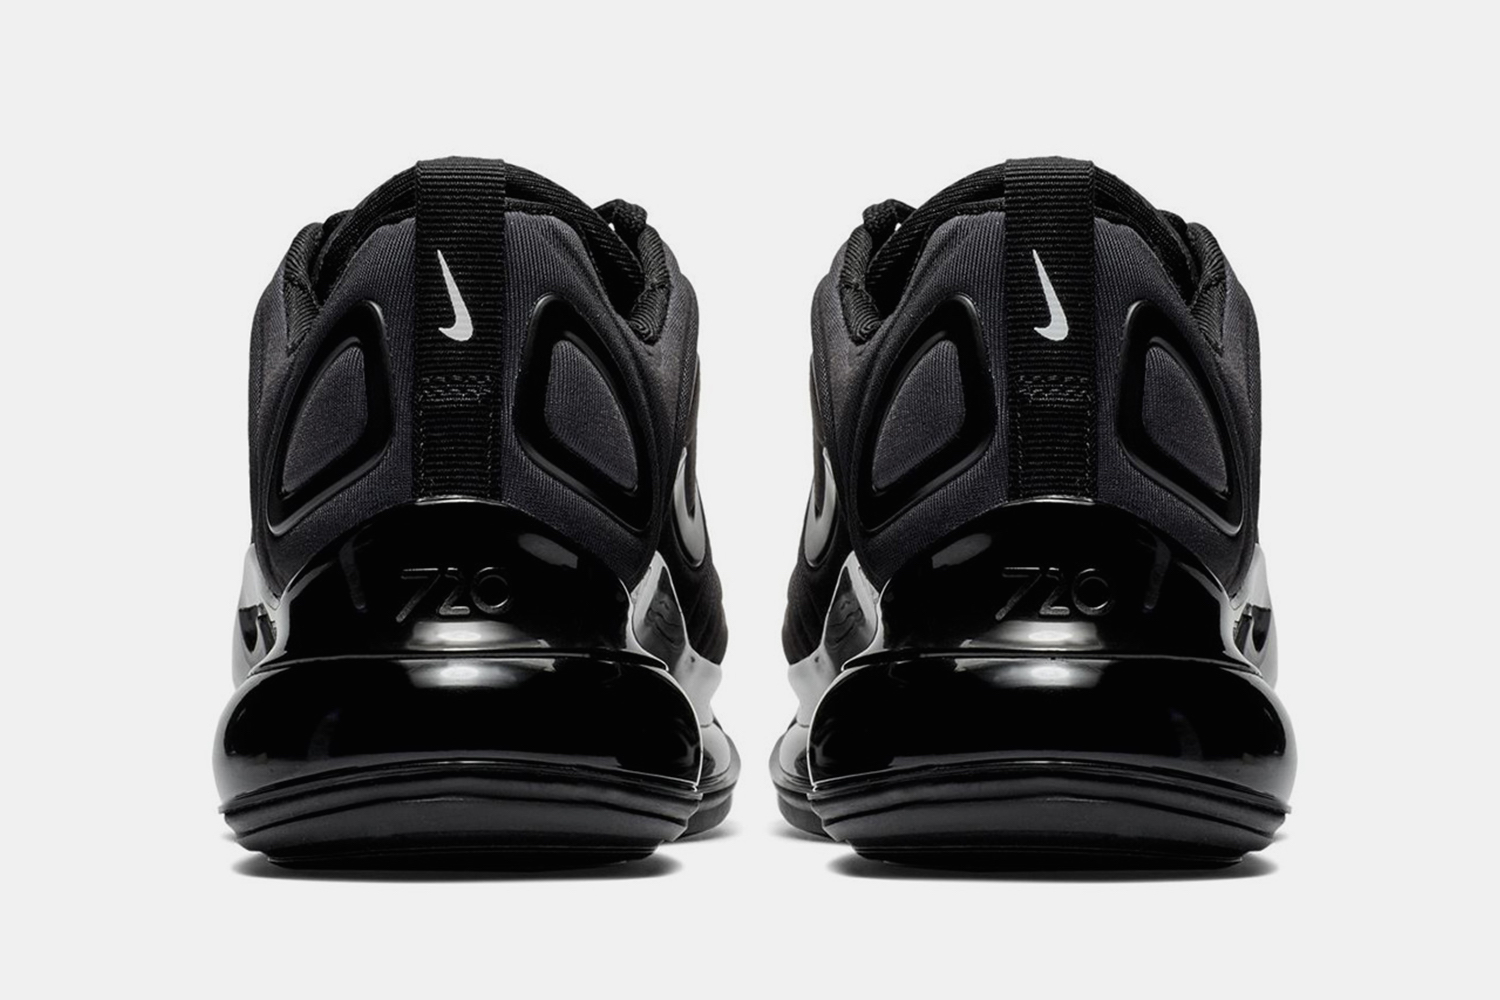 Brand new Nike Air Max 720 Triple Black Size 4Y/womens 5.5 MSRP $180 NIB 